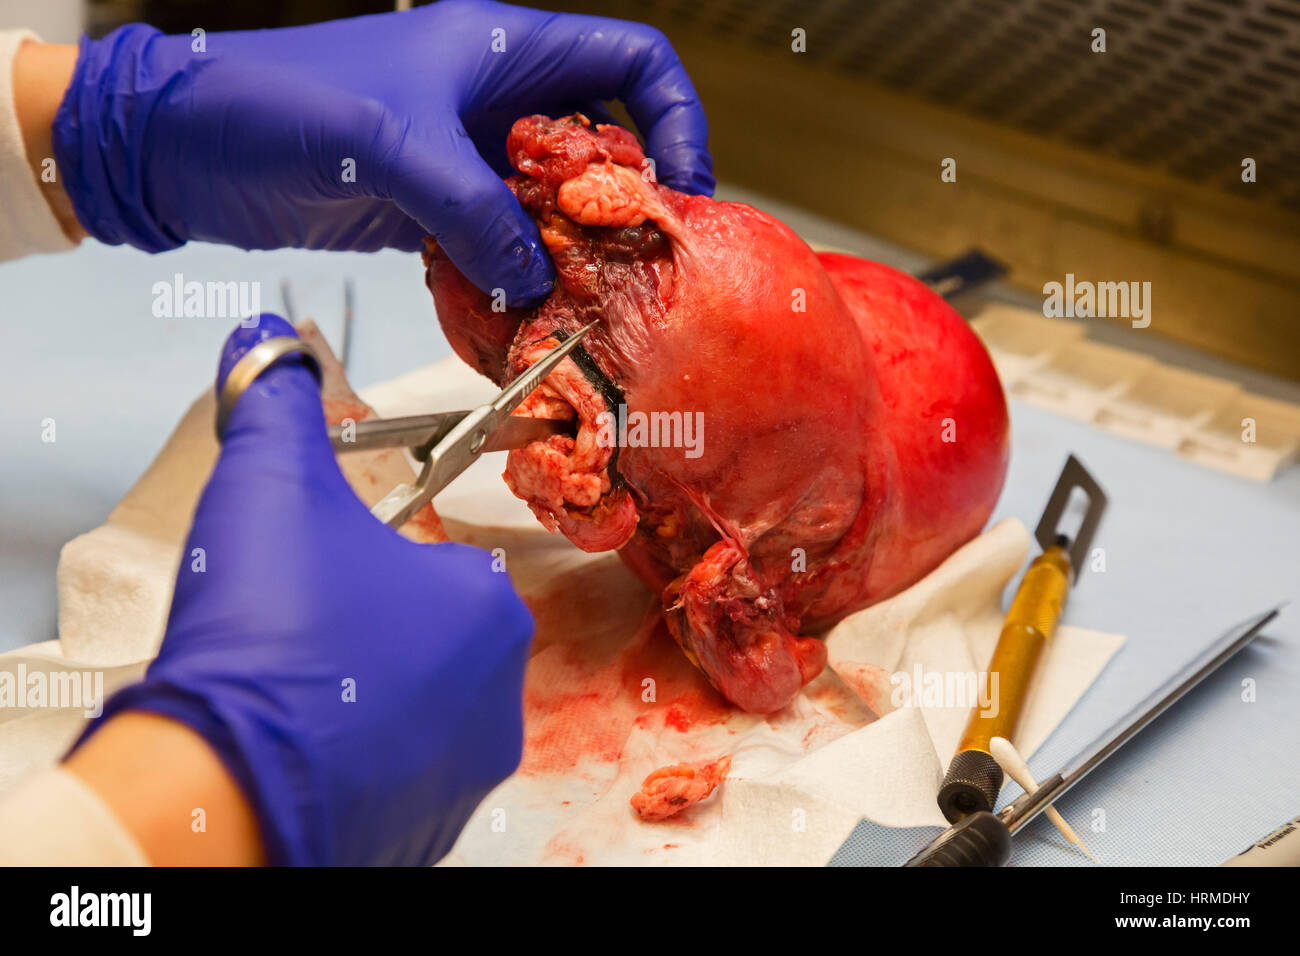 Detroit, Michigan - un assistant de pathologie au Detroit Medical Center examine un utérus avec un adénocarcinome endométrial. Banque D'Images